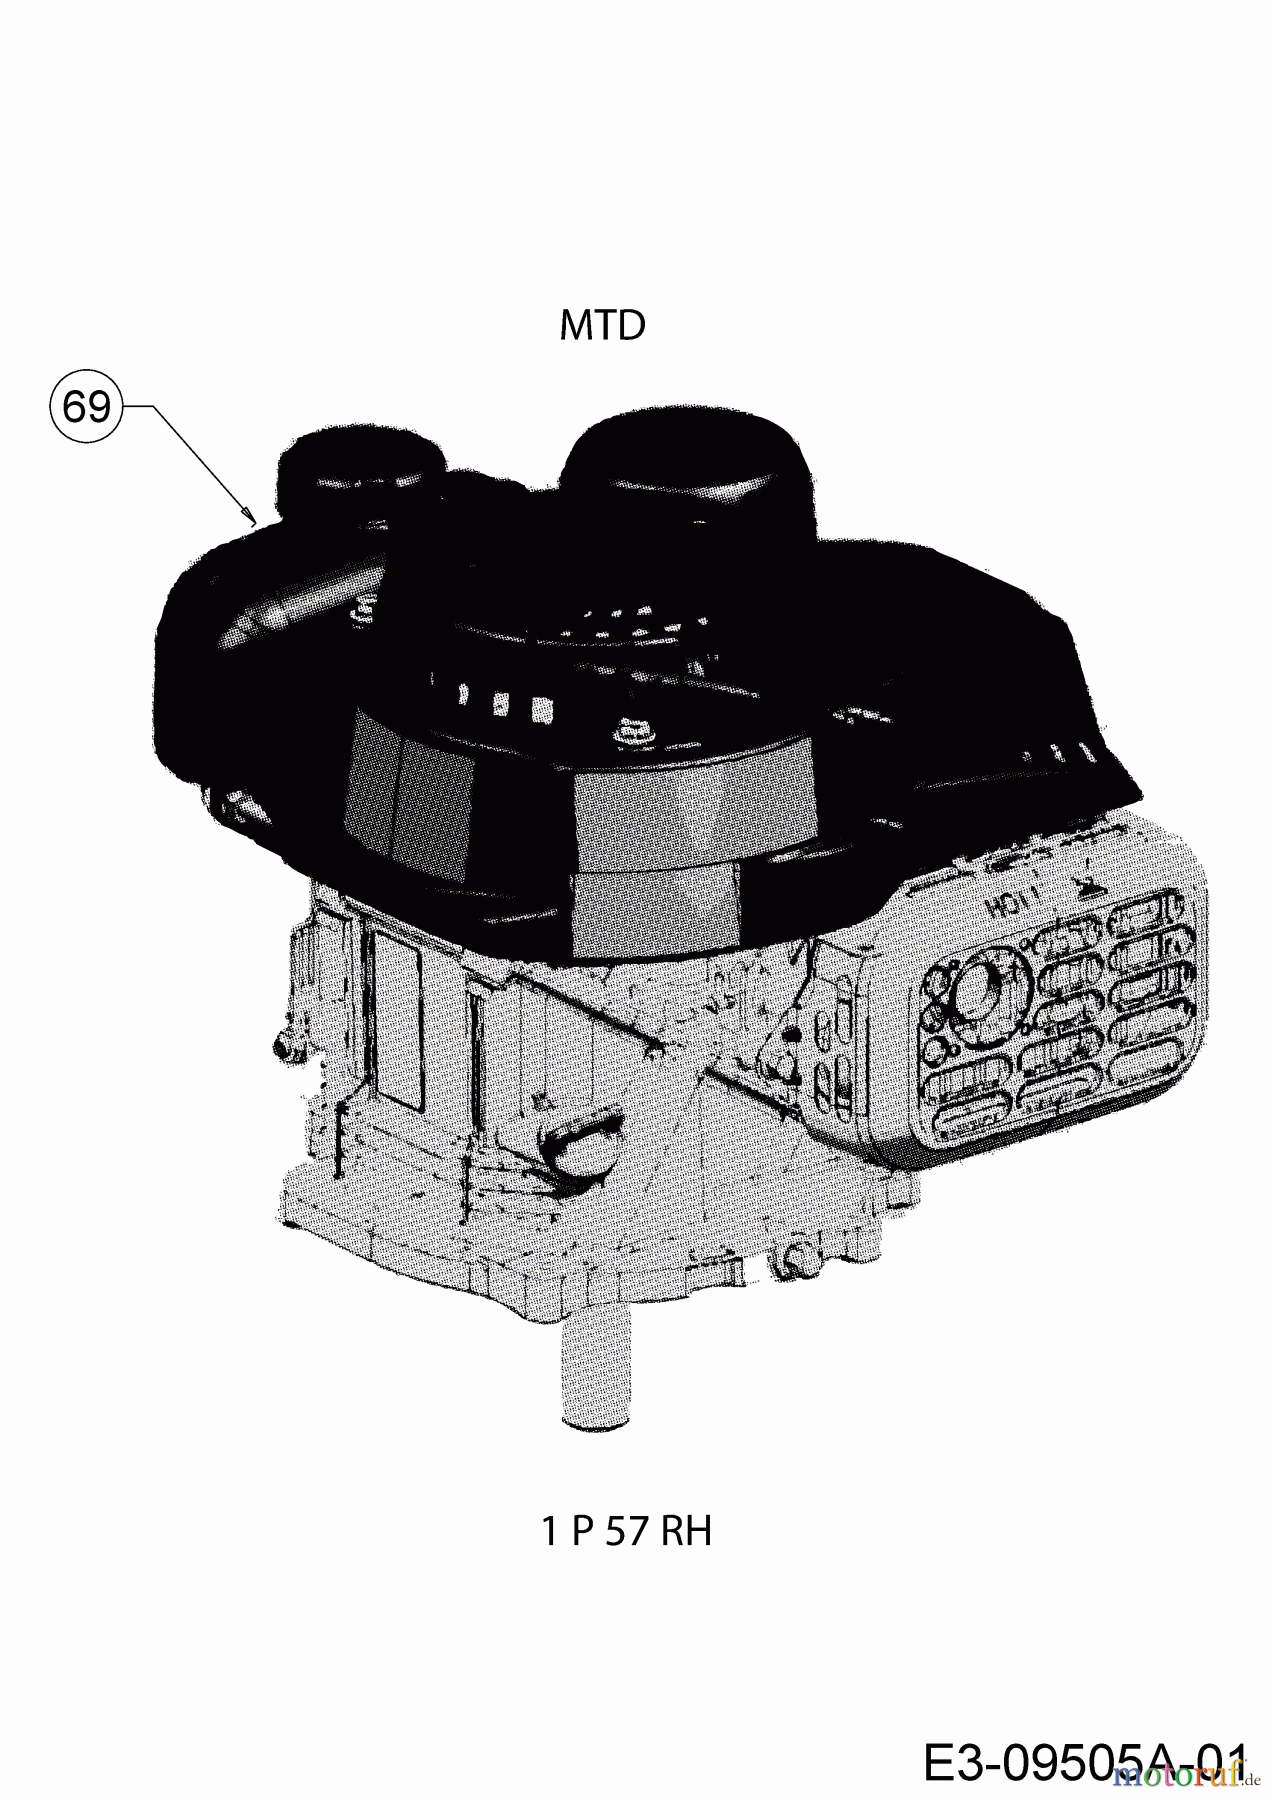  Cub Cadet Motormäher mit Antrieb LM1 AR46 12A-TQSJ603  (2017) Motor MTD